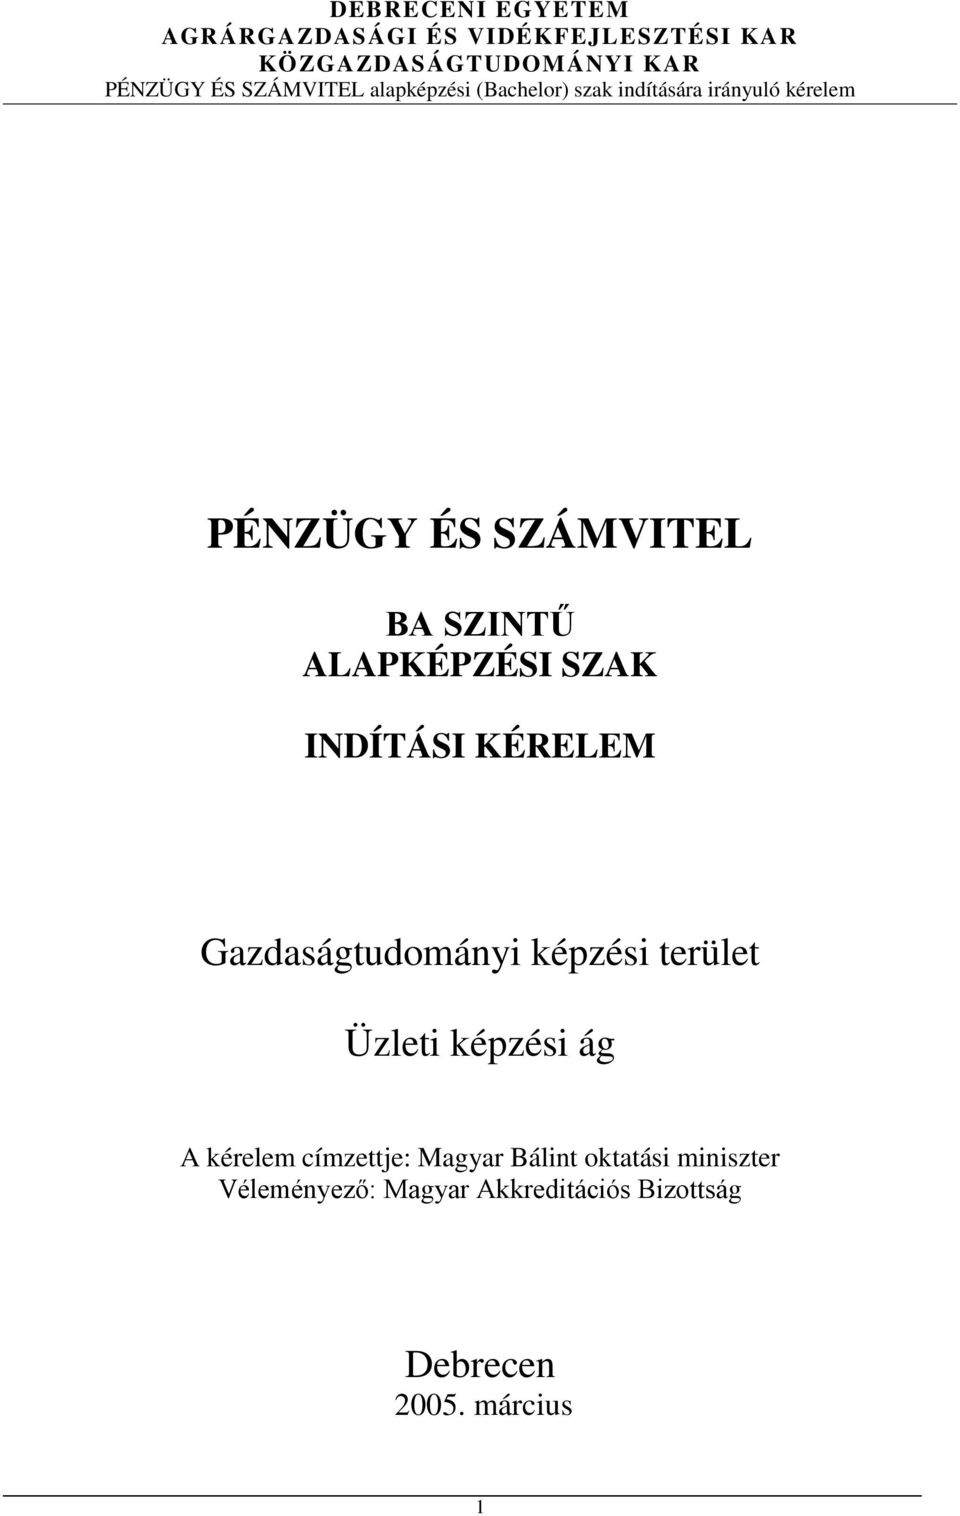 A kérelem címzettje: Magyar Bálint oktatási miniszter